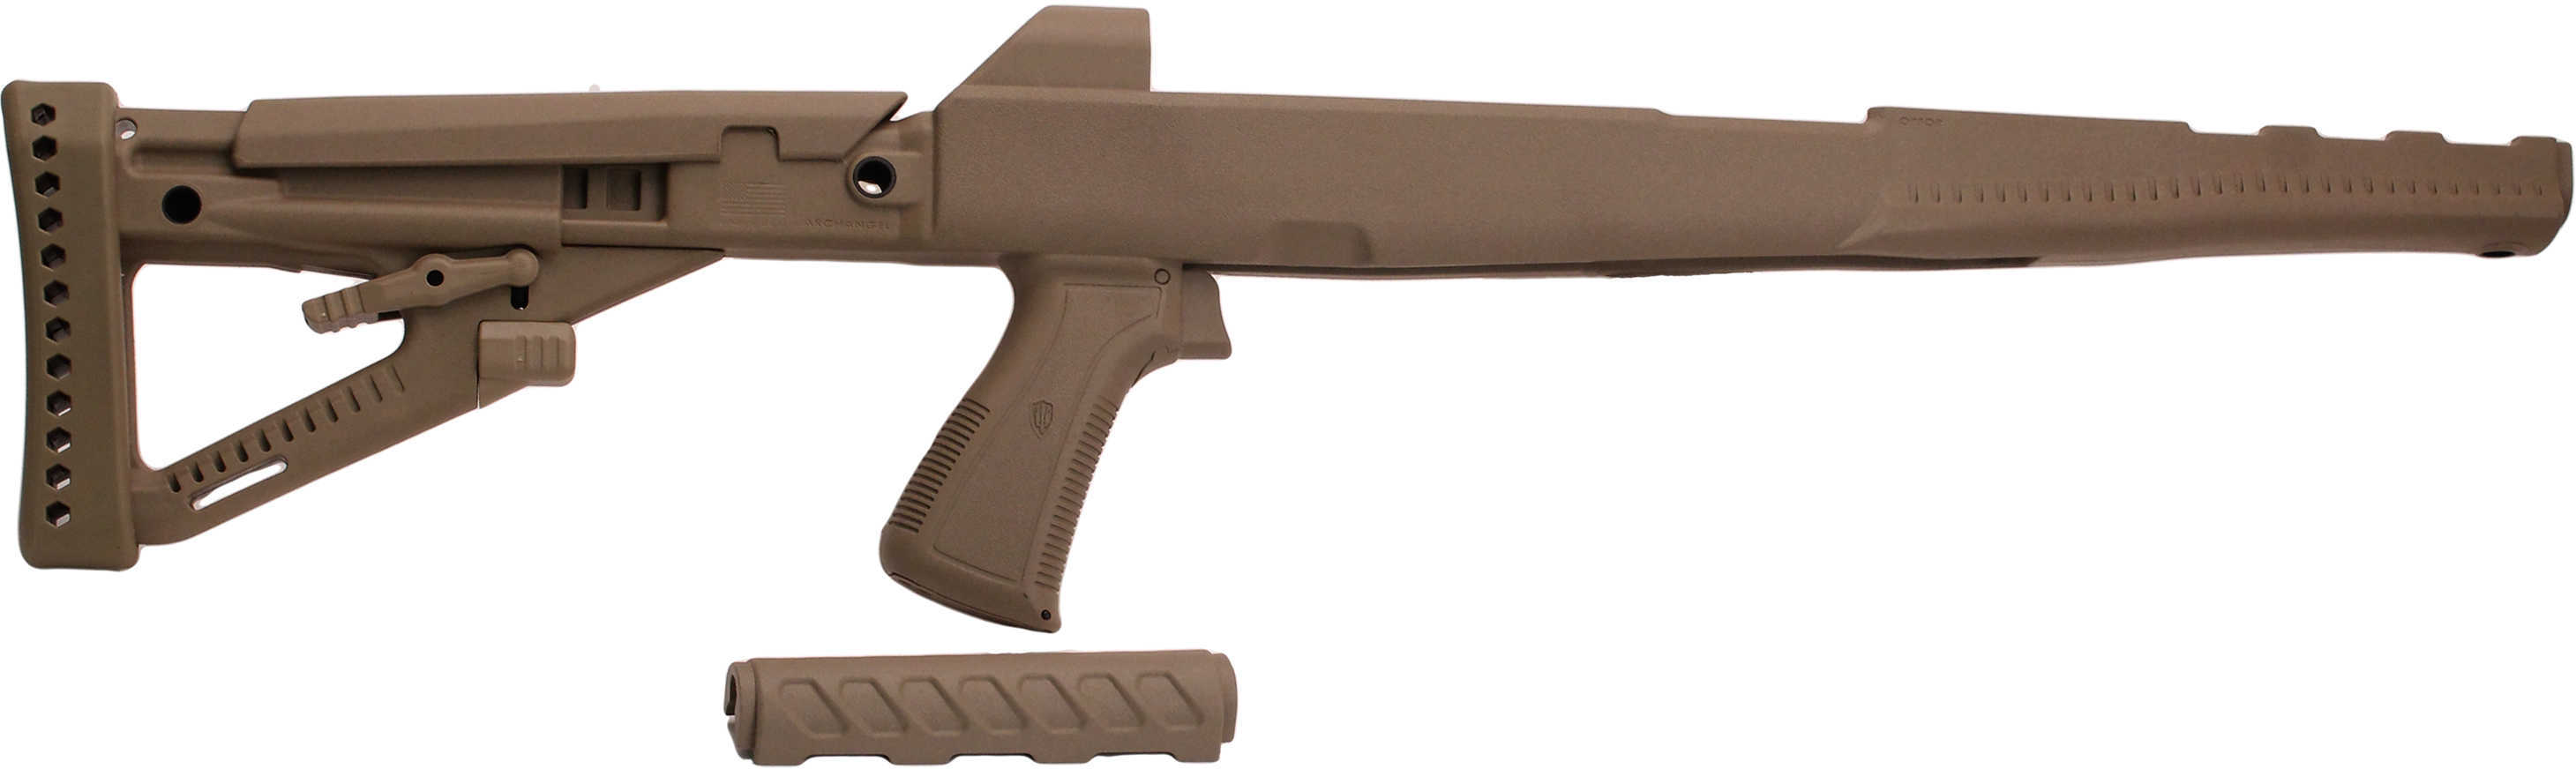 ProMag Archangel OPFor Pistol Grip Coversion Stock For SKS Tan Md: AASKS-DT